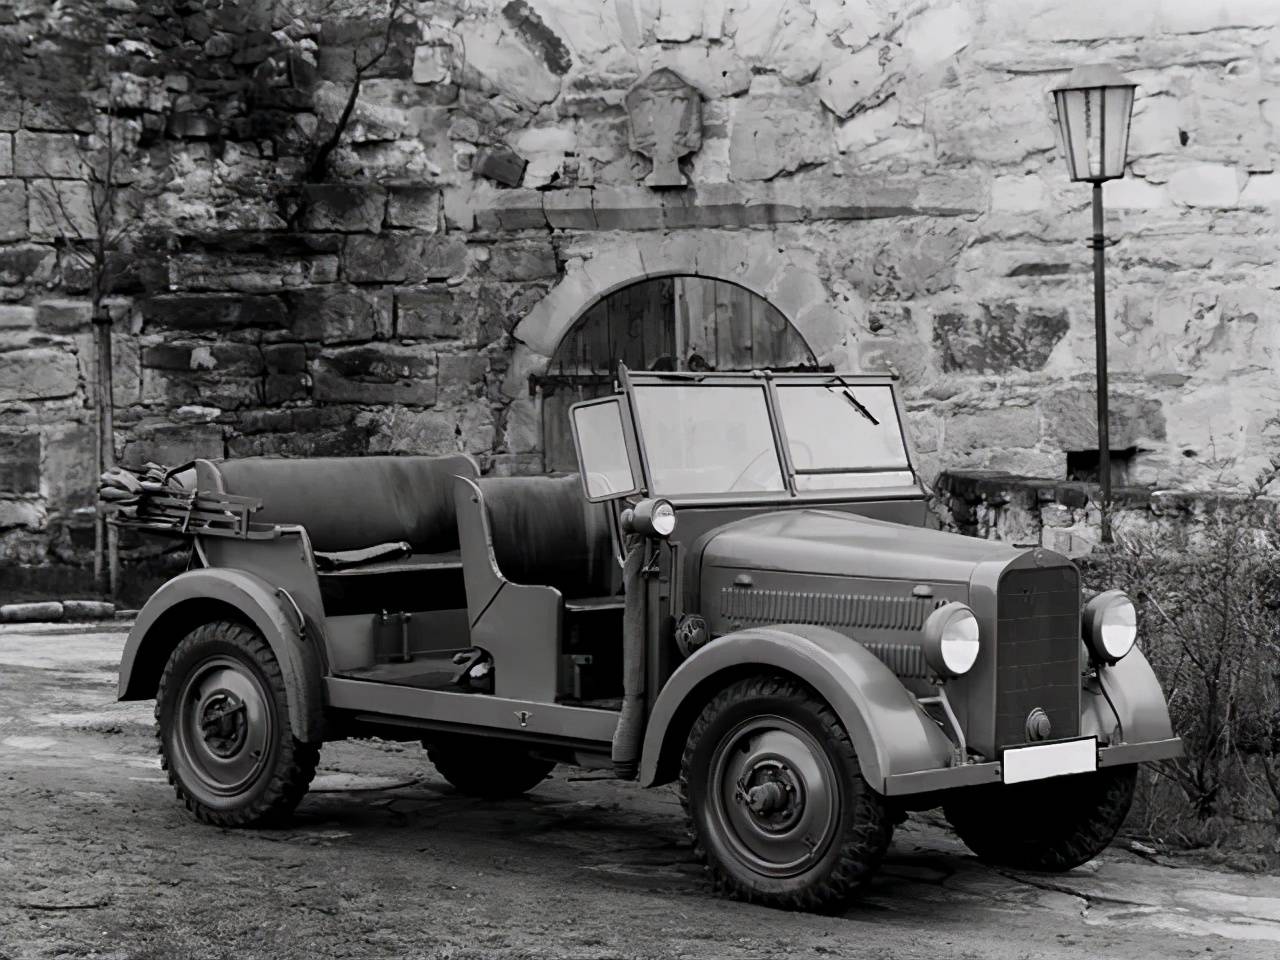 但祖上造过啊, 二战德国可用了不少奔驰军车